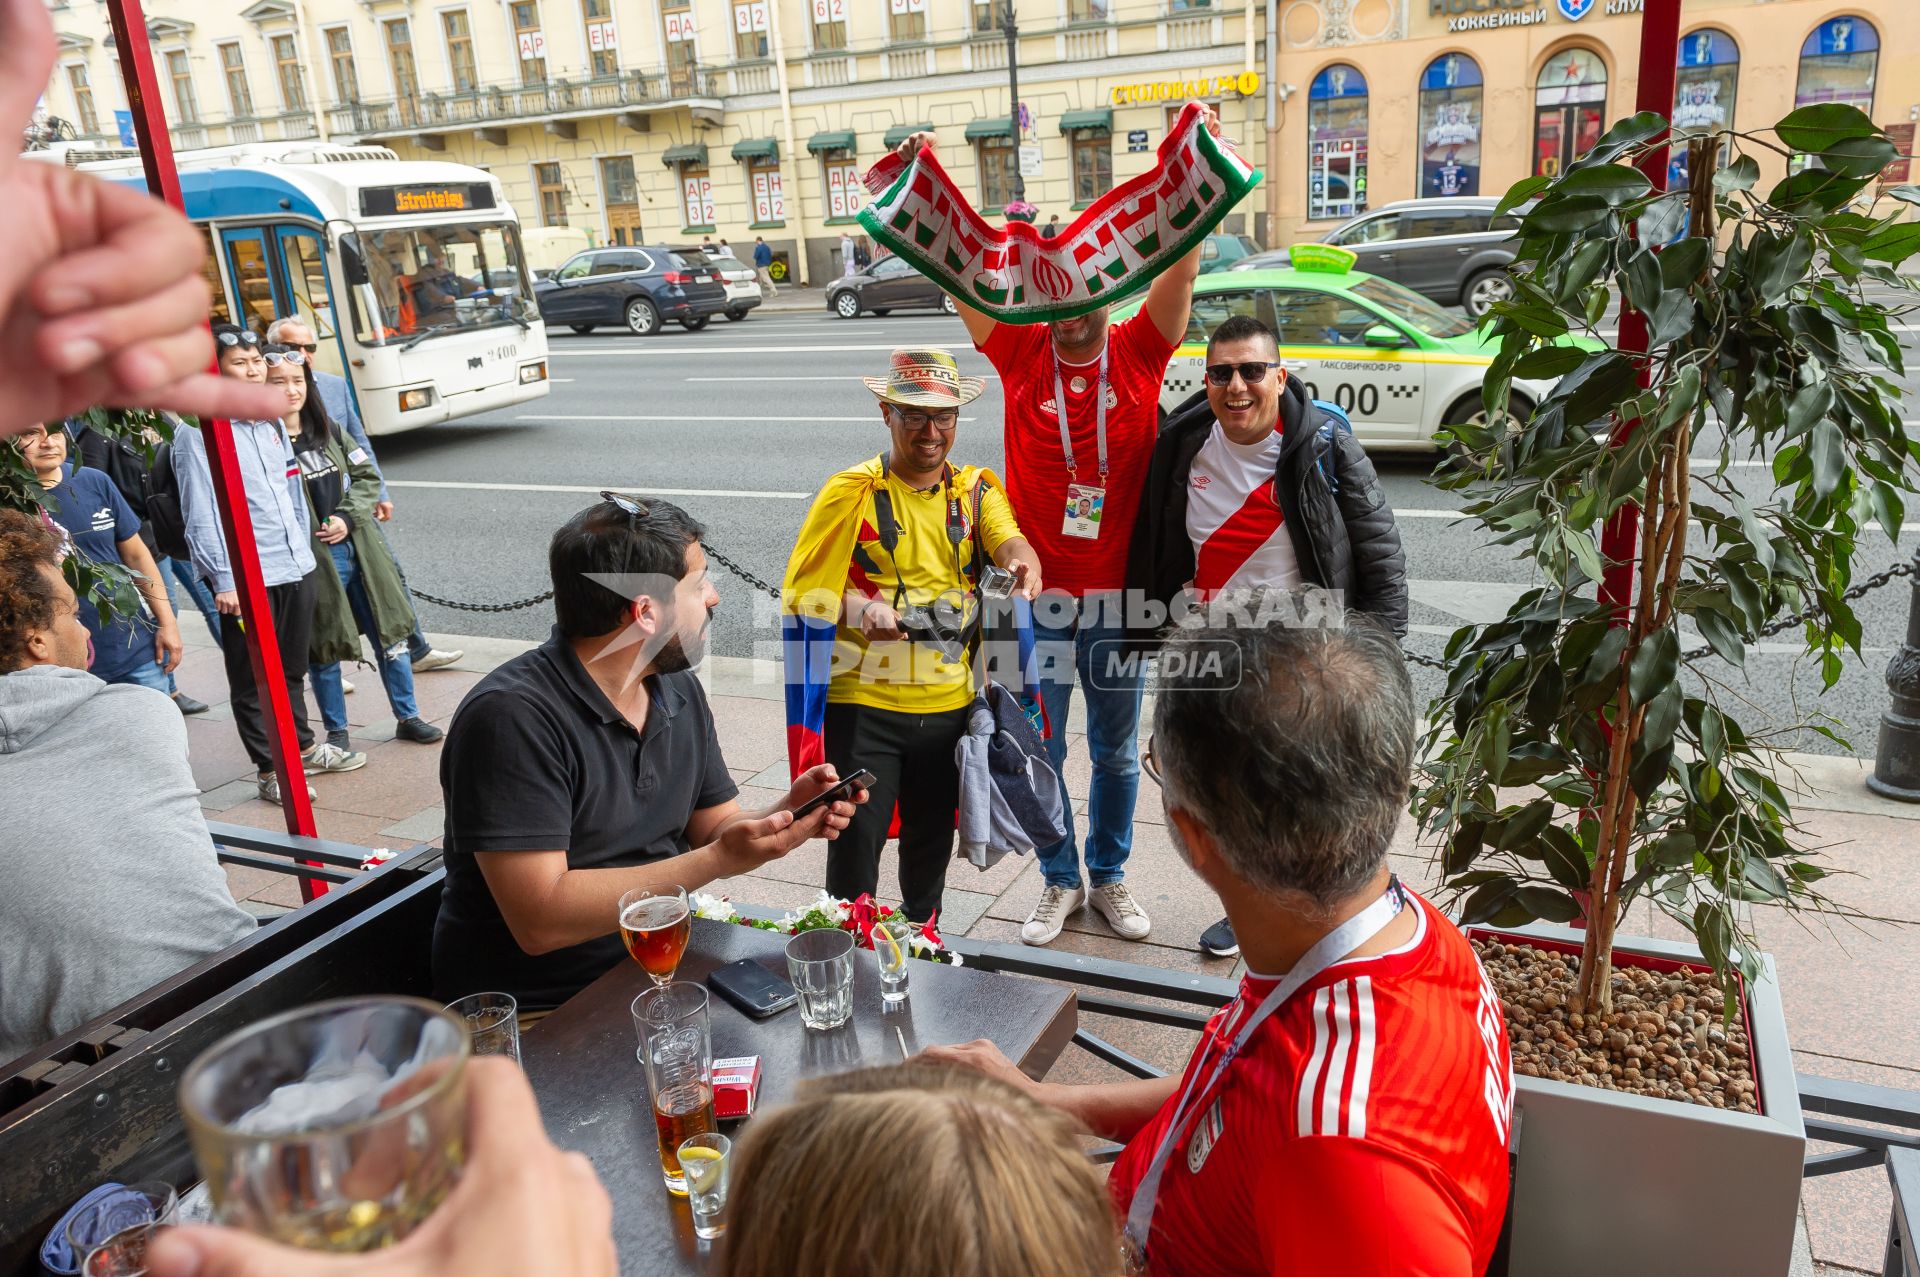 Санкт-Петербург. Болельщики в кафе во время проведения чемпионата мира по футболу - 2018.